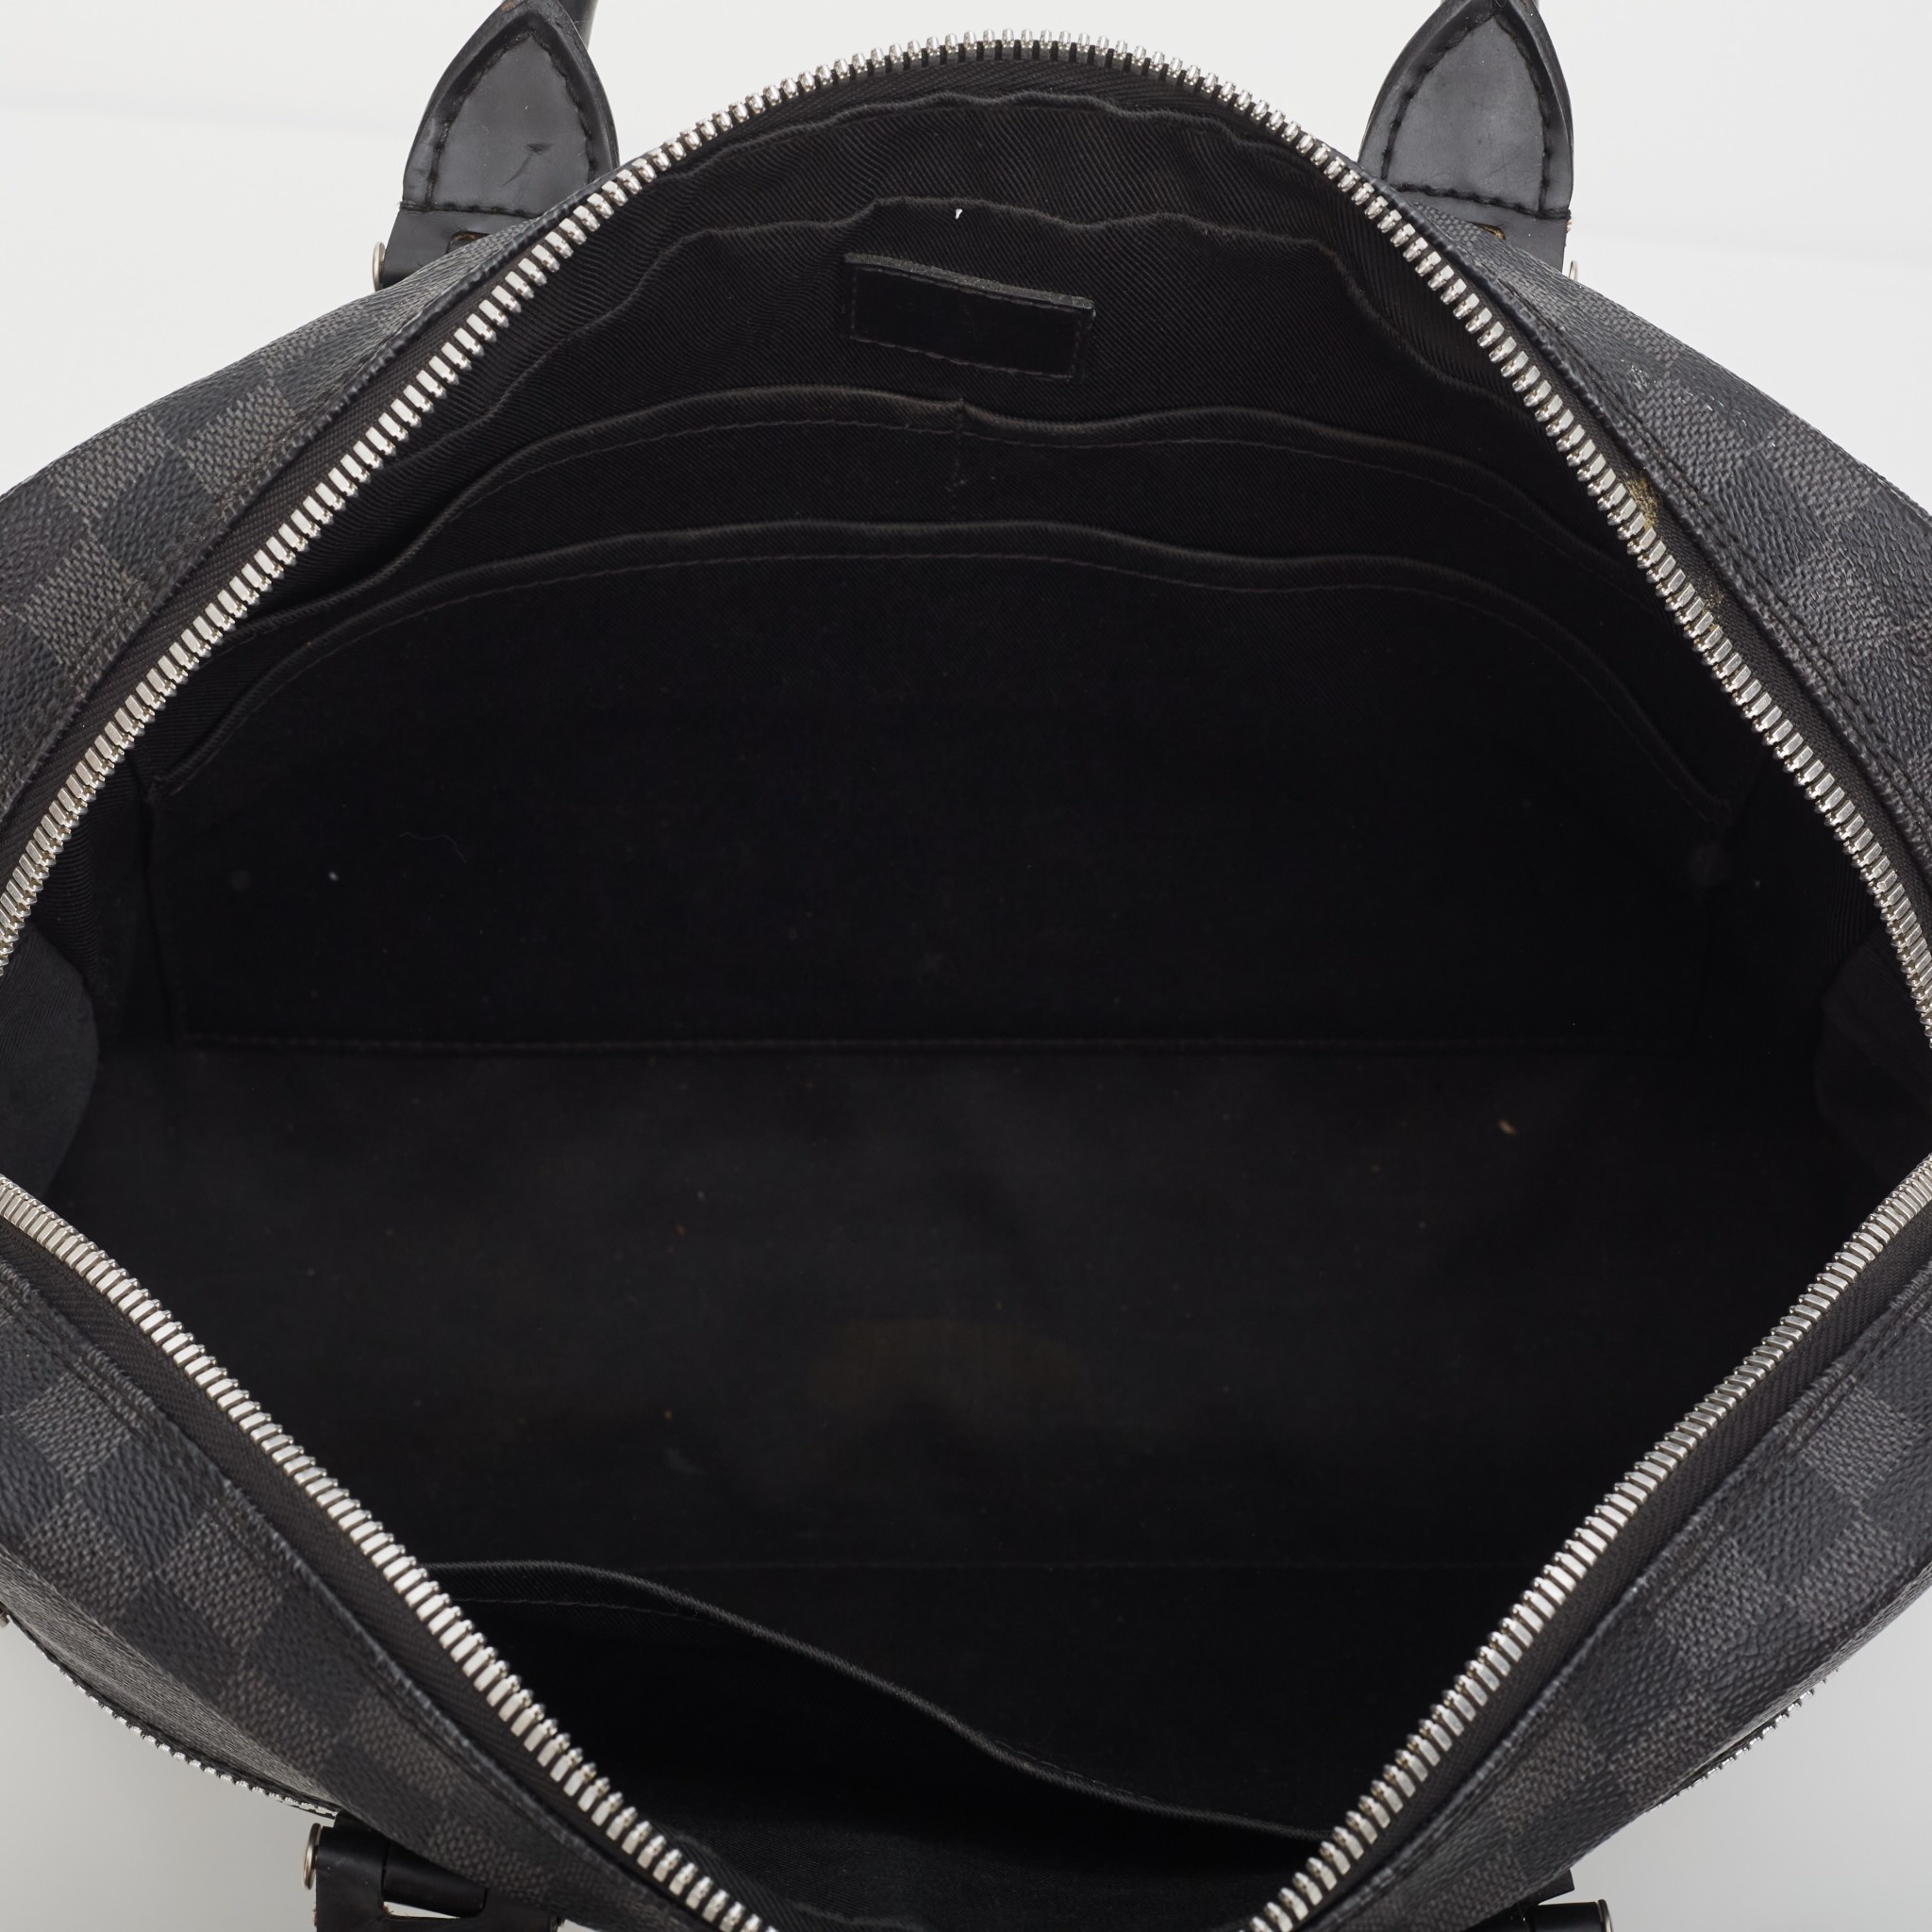 Backpack Briefcase #DamierGraphite #BusinessBag #LouisVuitton